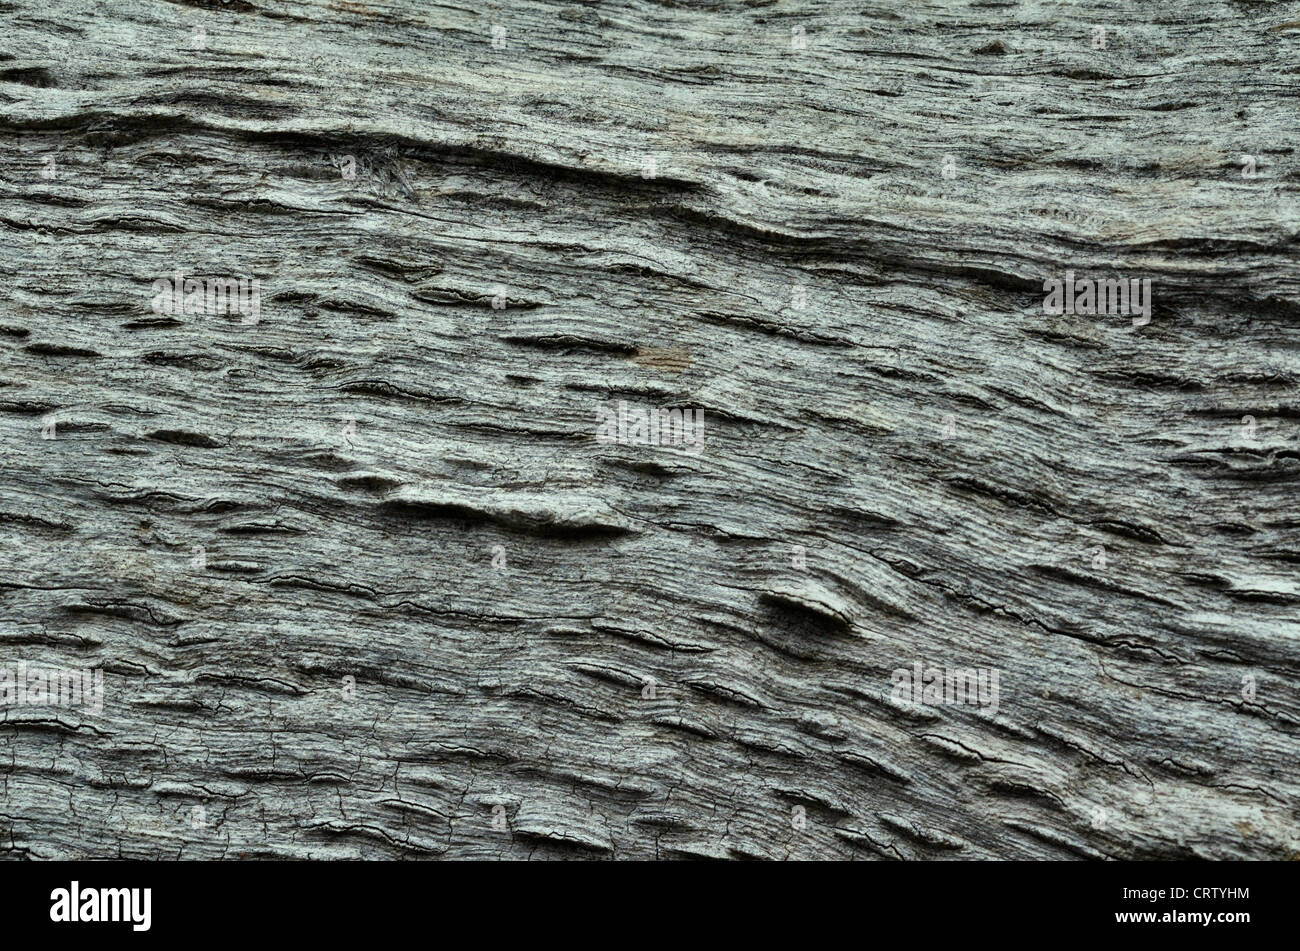 Dettaglio di weathered e marciume sezione del tronco di un albero. Il legno vecchio texture di close-up. Foto Stock